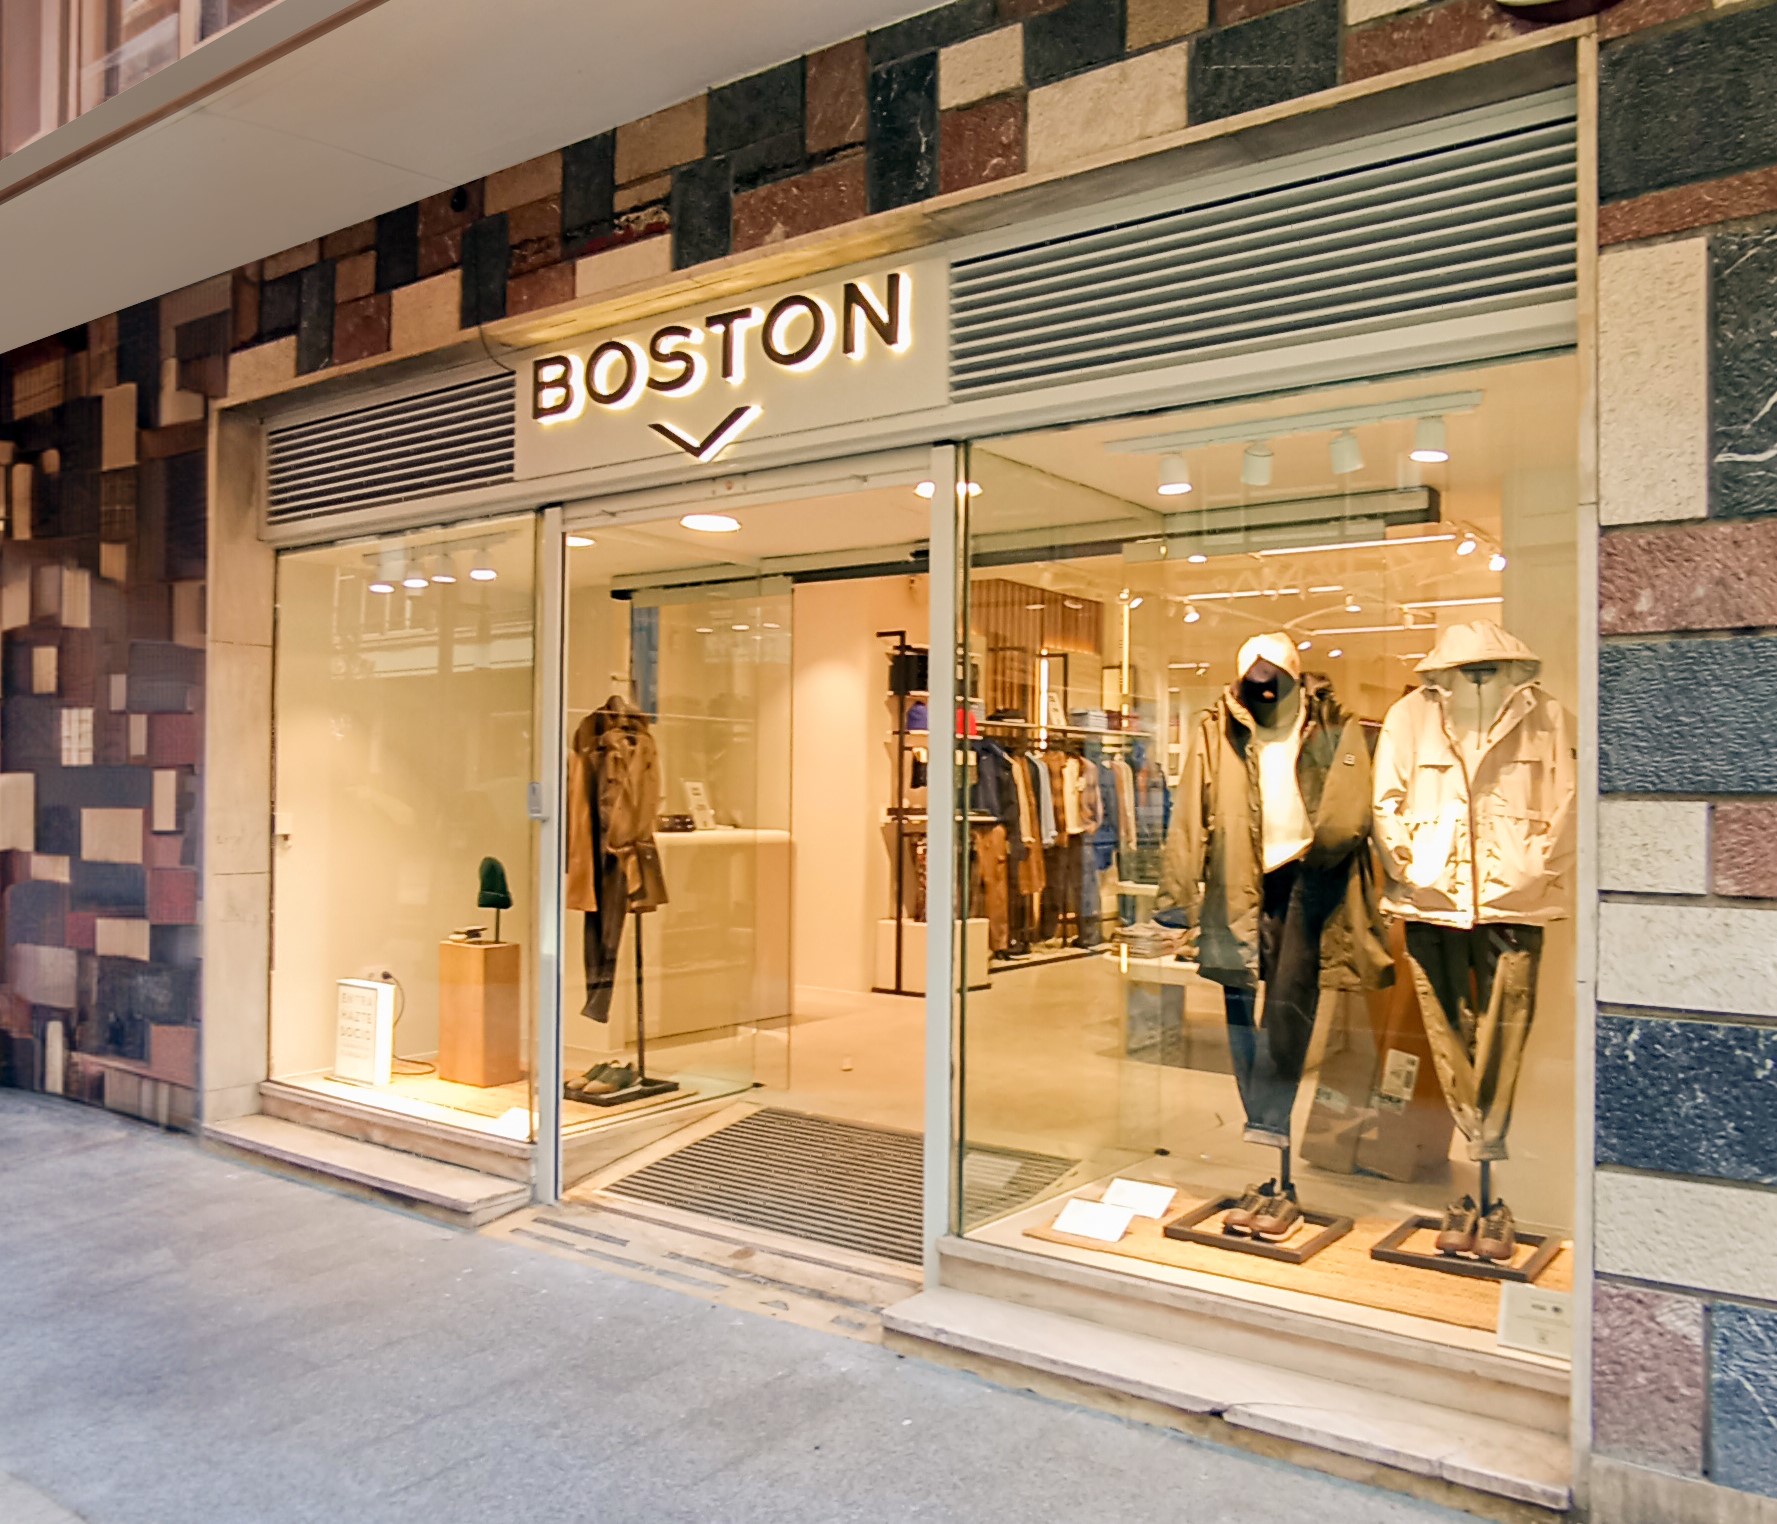 La firma de moda masculina Boston desembarca en el eje comercial del centro de Bilbao